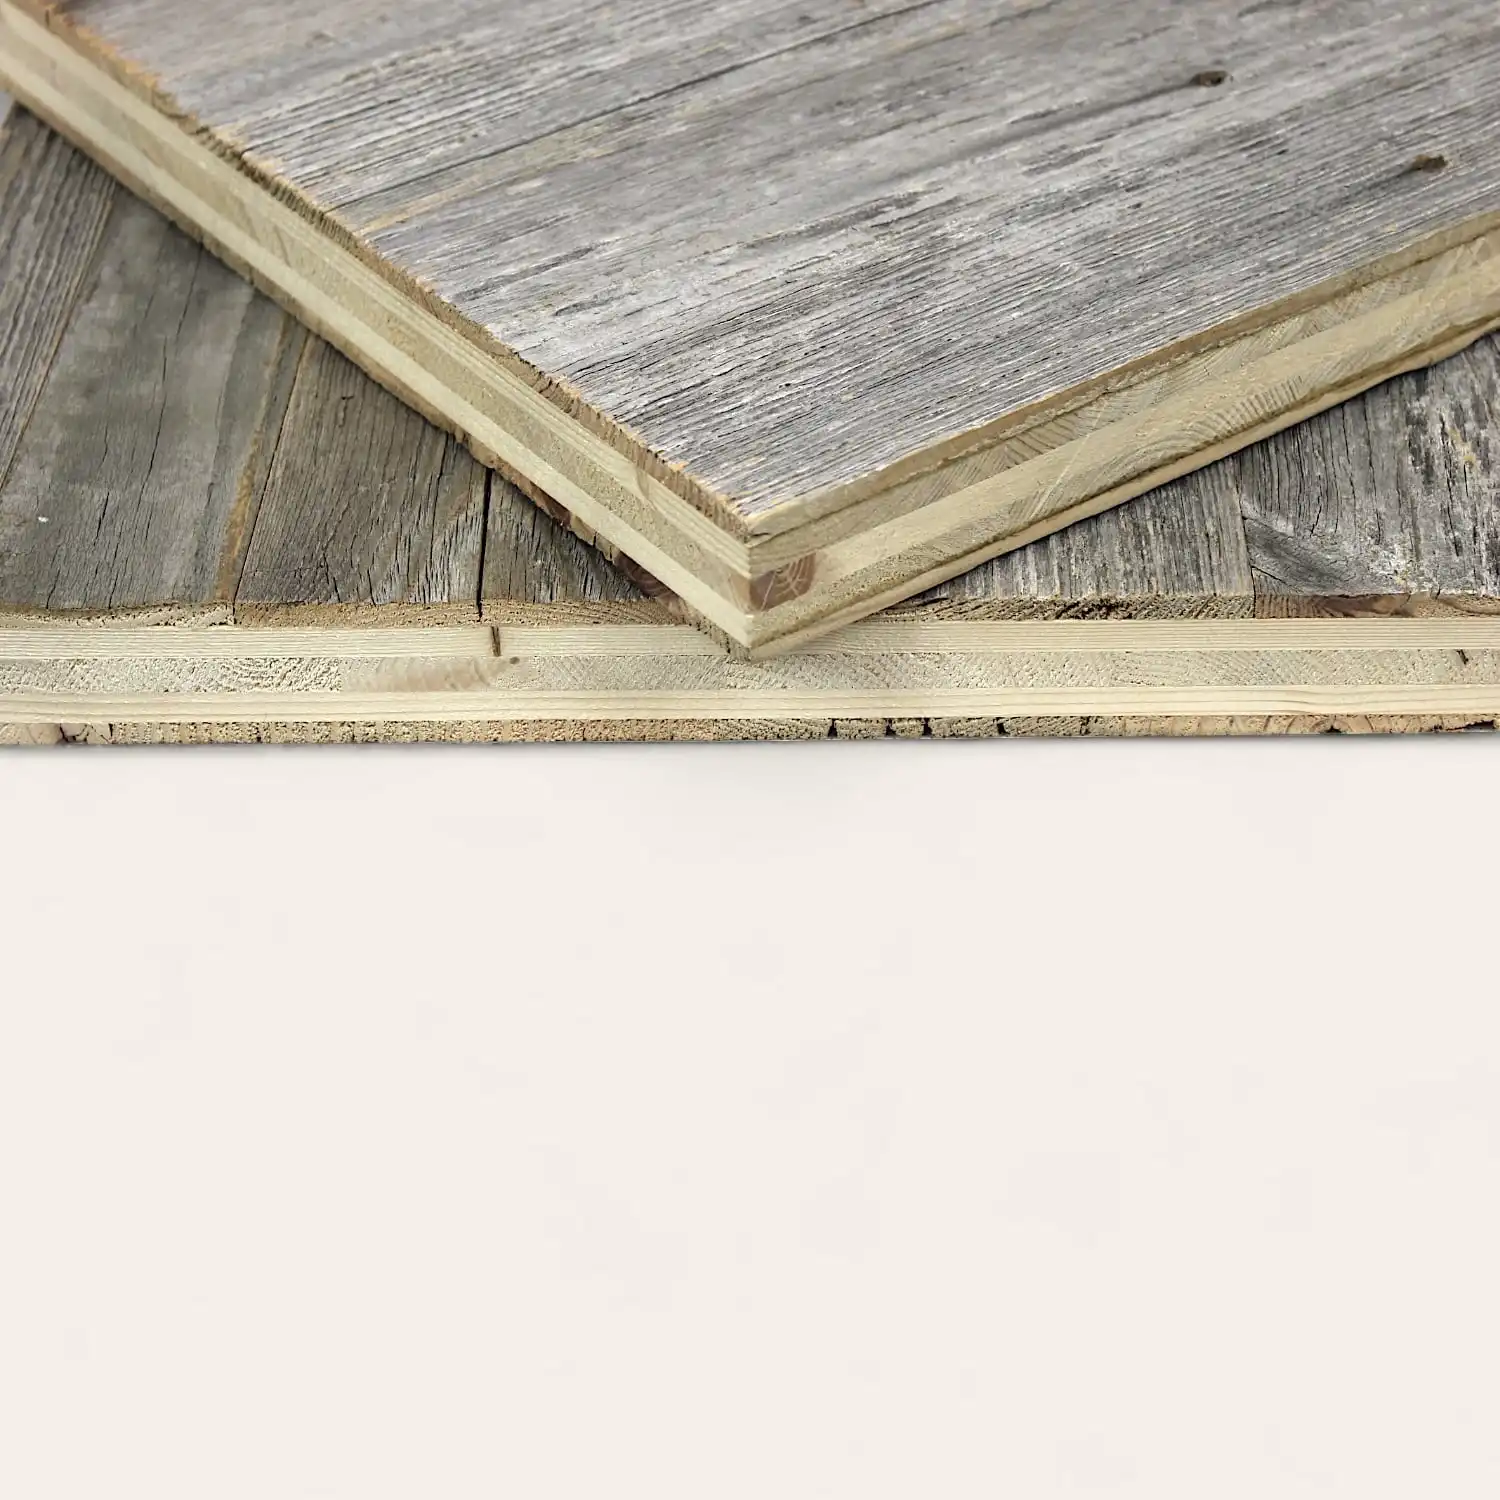  Vue rapprochée d'un échantillon de sol stratifié en bois appuyé contre un autre sur une surface en bois de panneau 5 plis. 